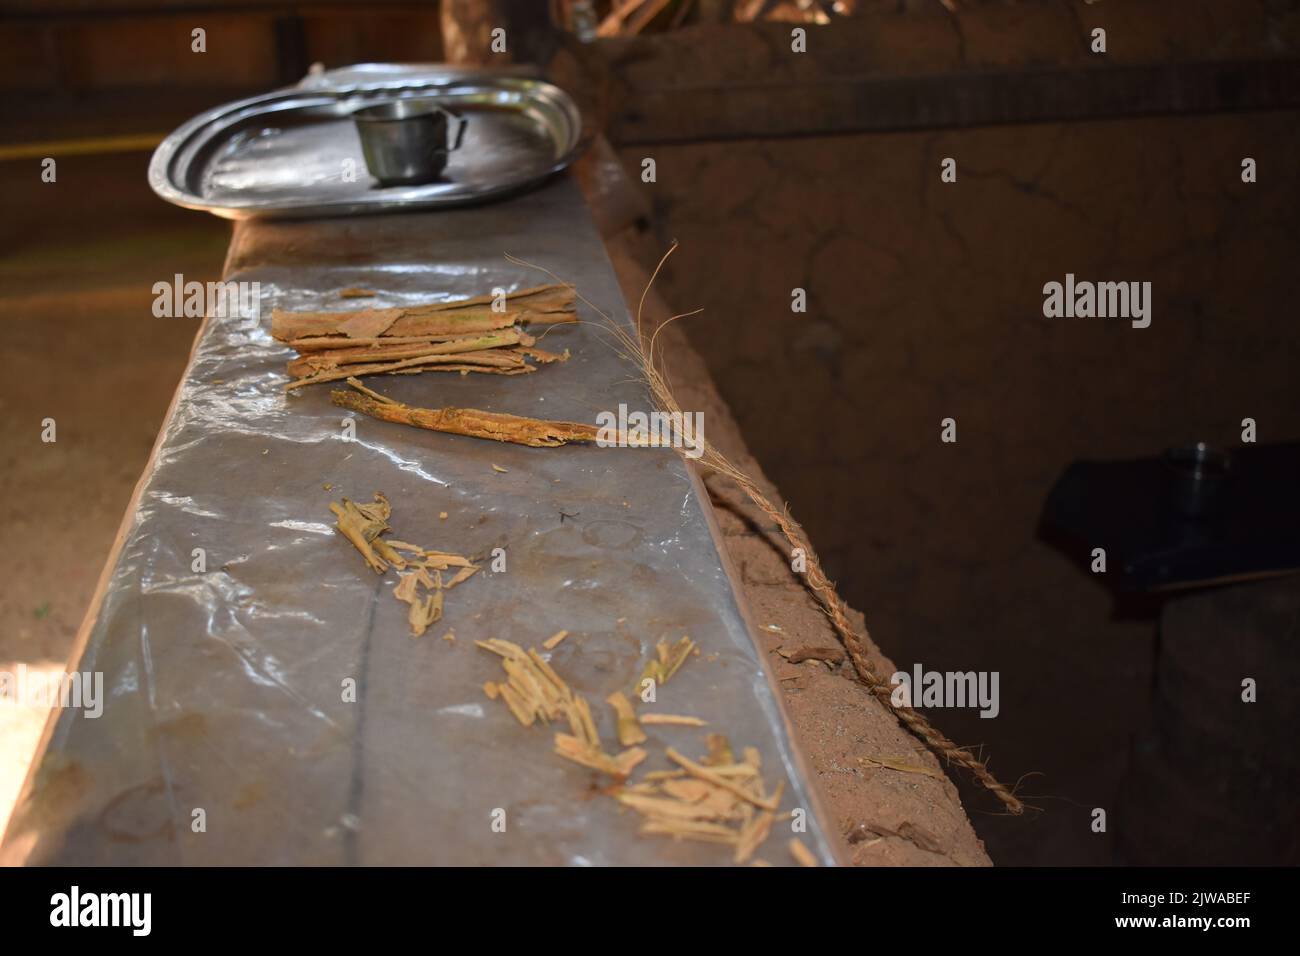 Cinnamon Islet si trova sul Madhu Ganga si trova verso il sud dello Sri Lanka. L'isolotto è abitato dalla famiglia del produttore di cannella G. H. Premadasa, che è abbastanza gentile da spiegare ai visitatori come sbucciare la cannella per la produzione di olio di cannella. La gente può avere un tè misto alla cannella e comprare cannella della qualità più alta qui. La cannella è una spezia che viene dalla corteccia interna dell'albero tropicale del Cinnamomum, è venduta come quills rotolato (bastoncini di cannella) o macinato in una polvere fine. Sri Lanka. Foto Stock